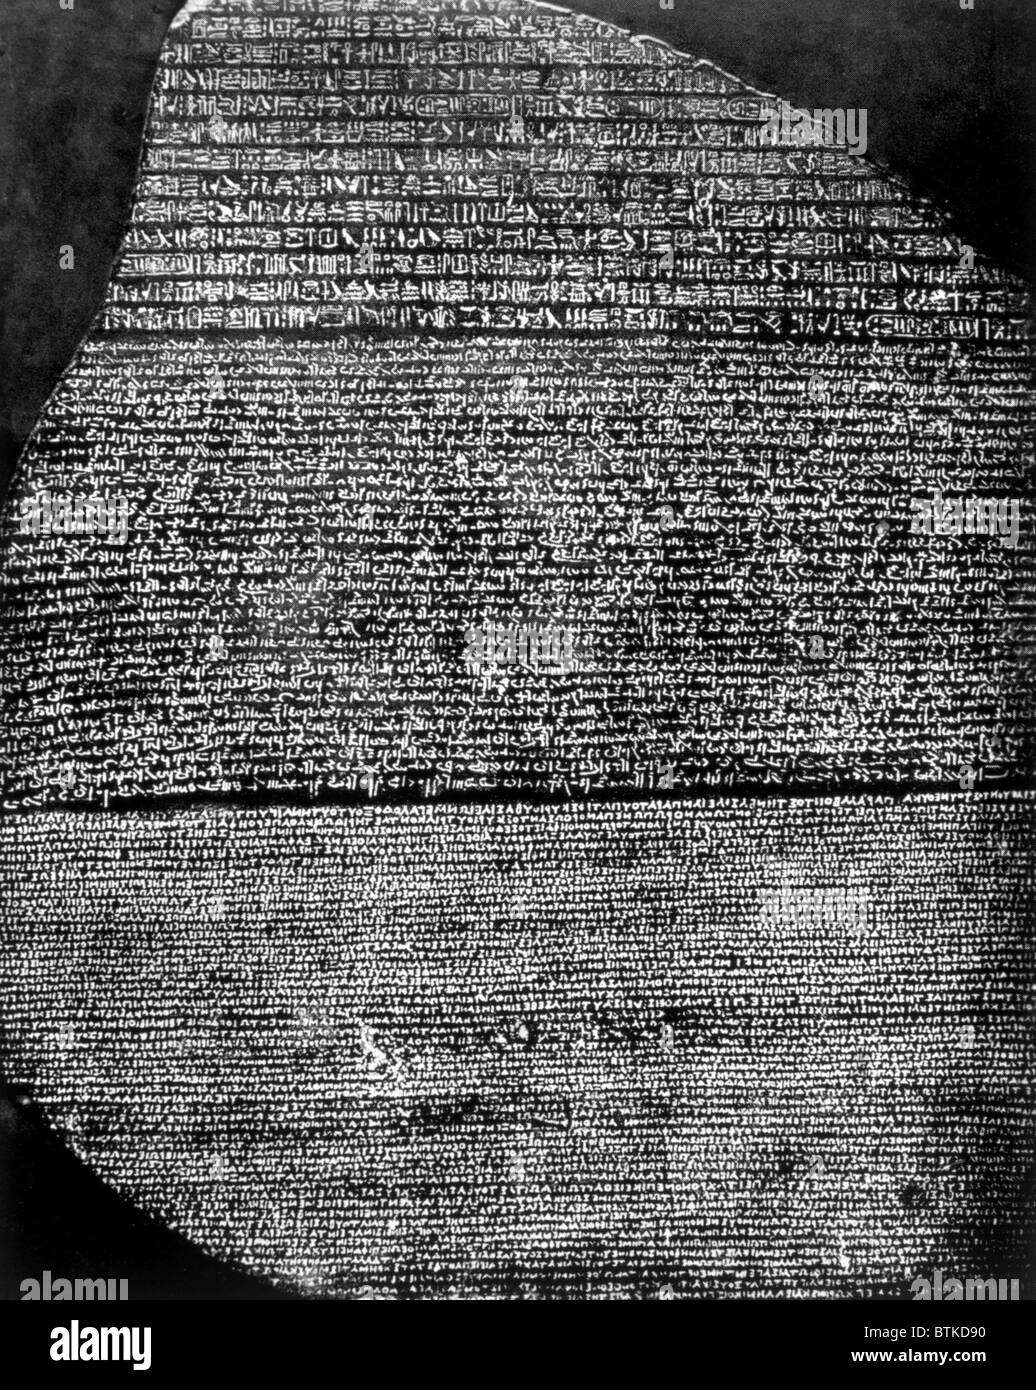 La Rosetta Stone, lastra di basalto inscritta da sacerdoti di Tolomeo V in geroglifici, demoniaco e greco, trovati da Napoleone i soldati nel 1799, dal British Museum Foto Stock